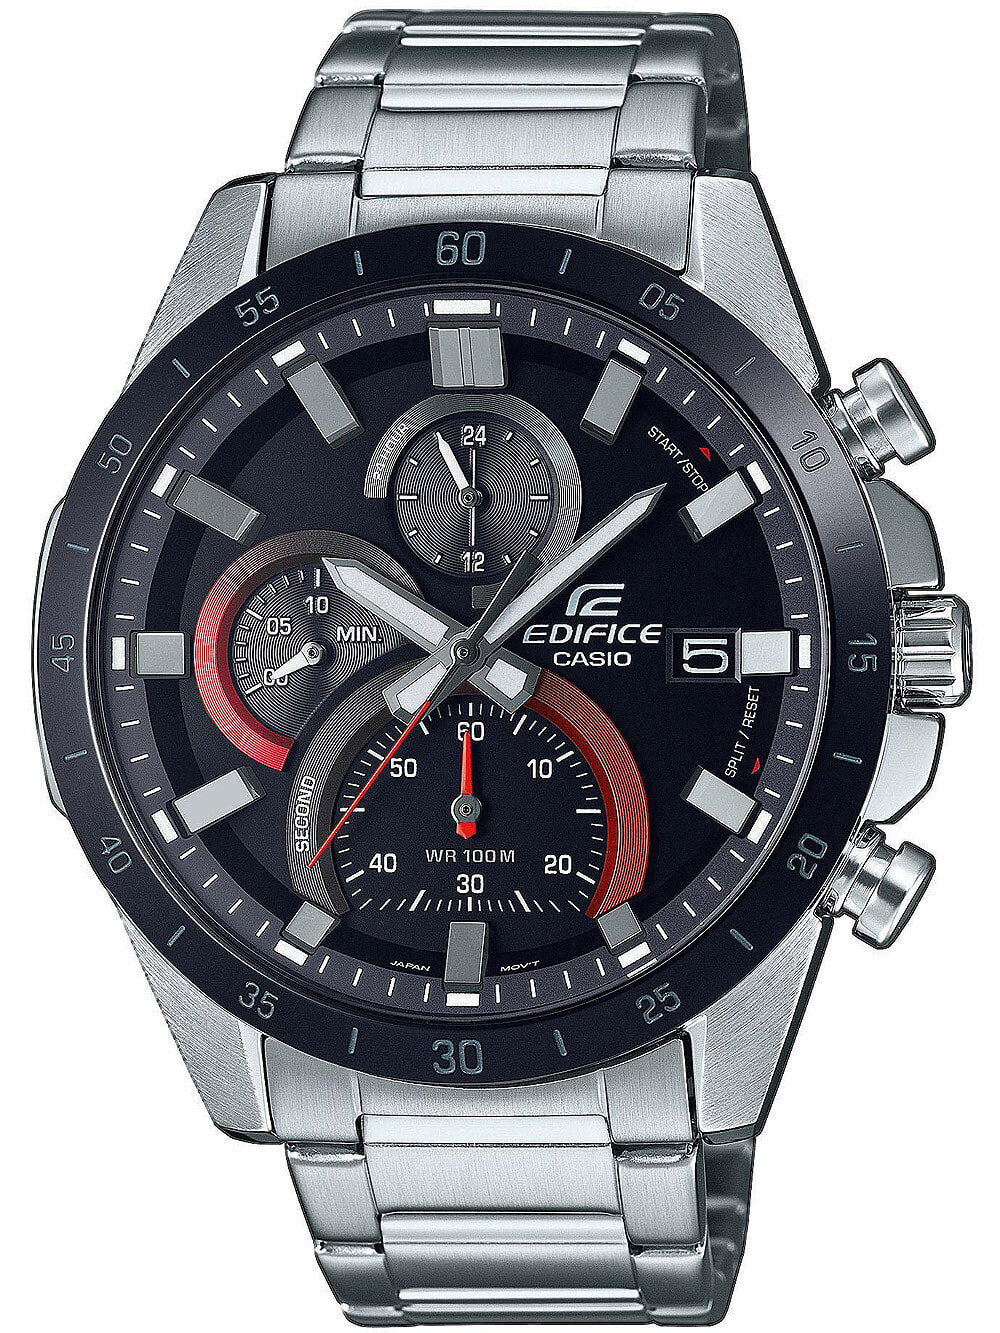 Мужские наручные часы с серебряным браслетом Casio EFR-571DB-1A1VUEF Edifice chrono 40mm 10ATM